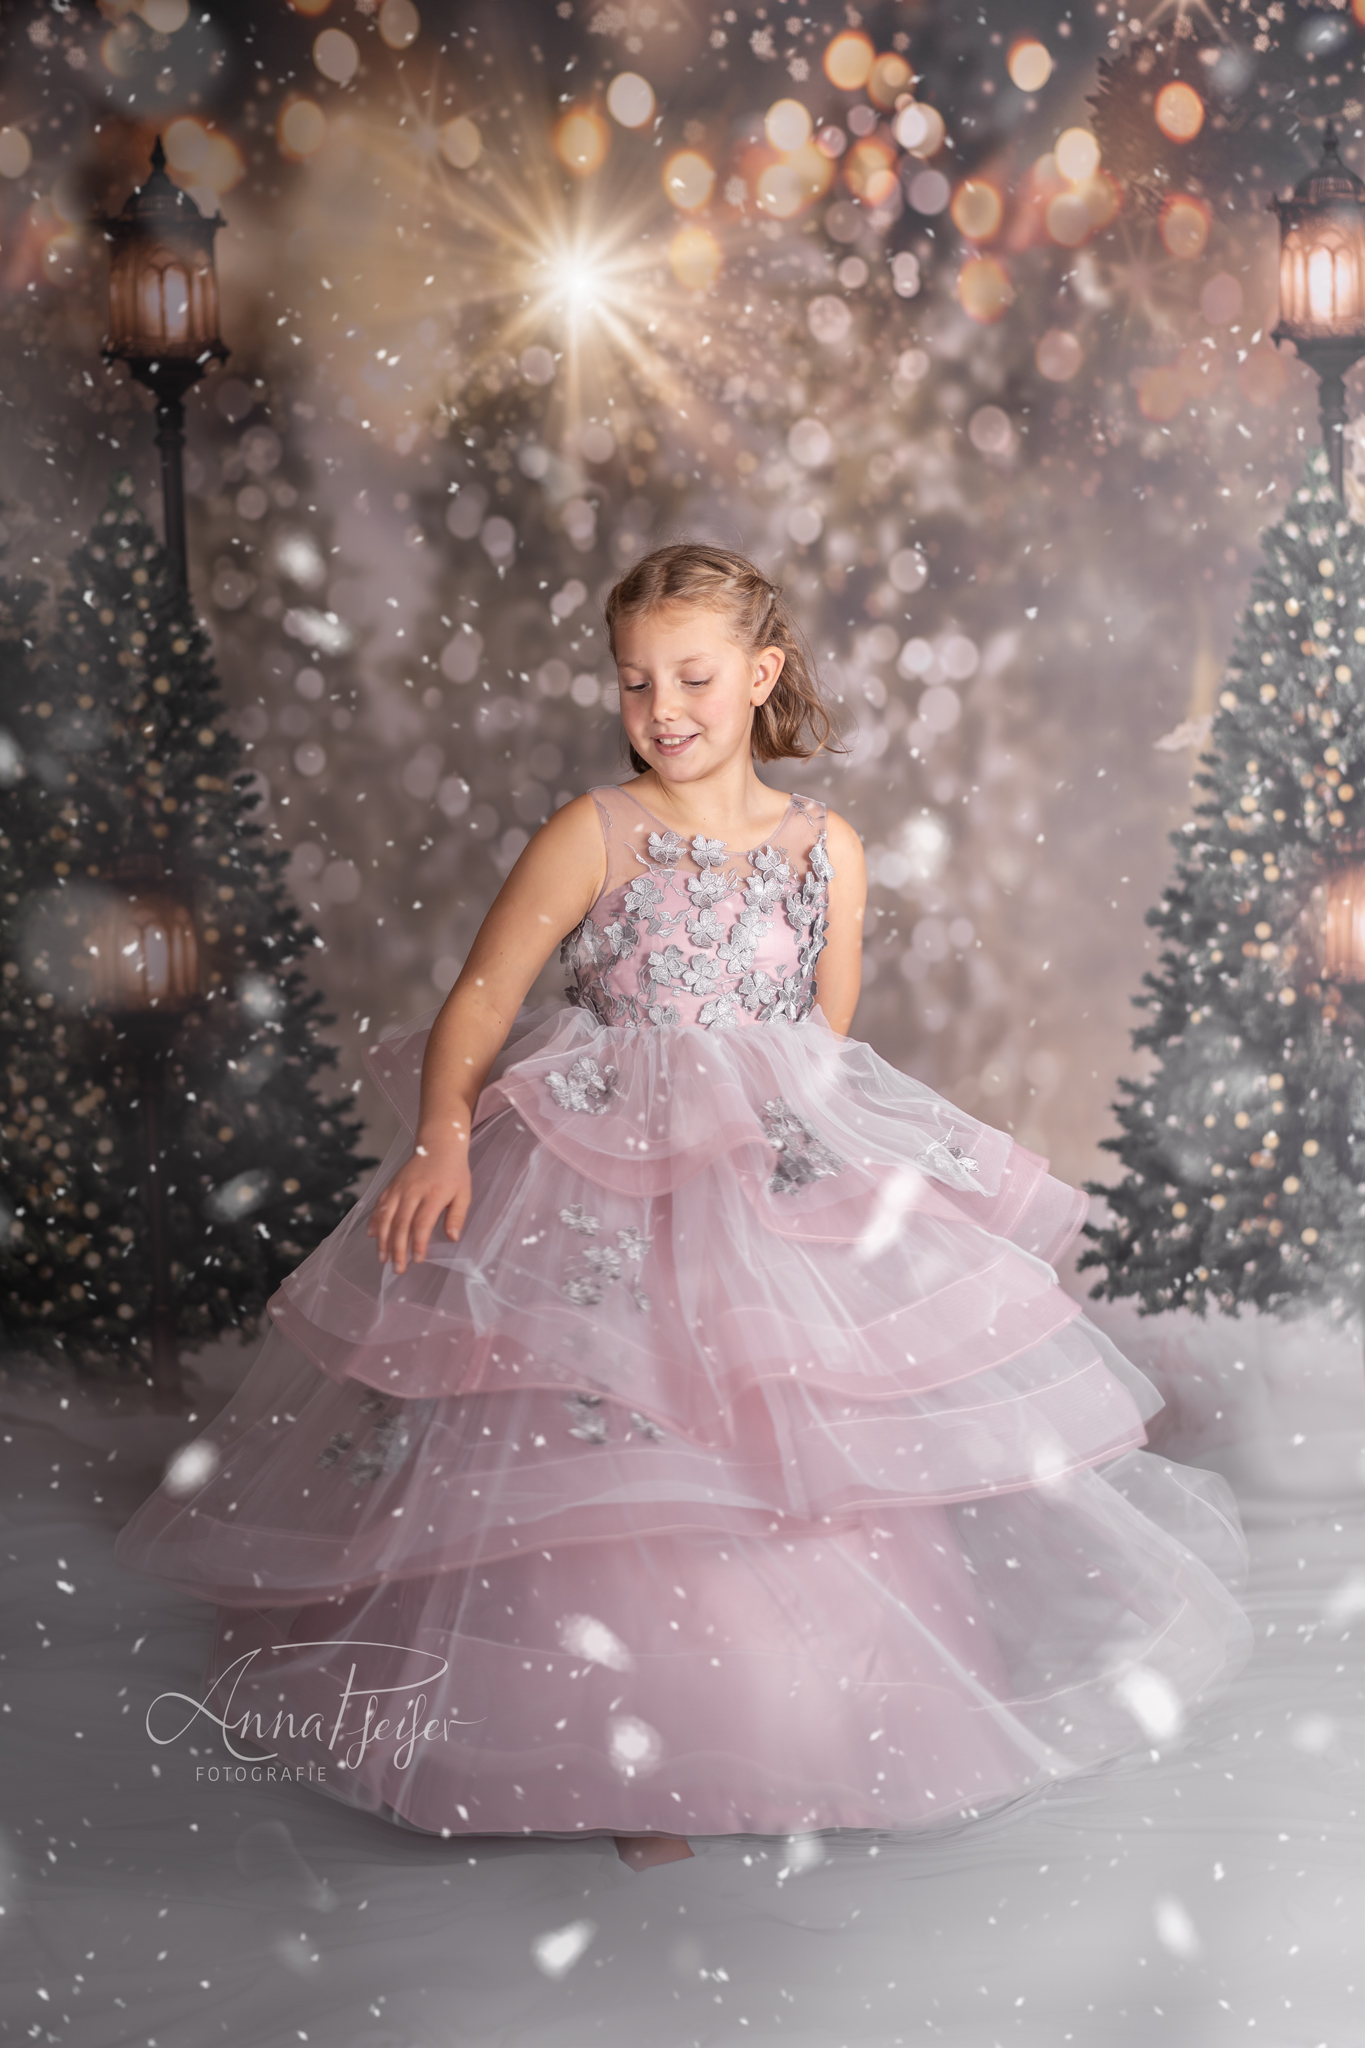 Mädchen tanzt im Prinzessinnenkleid im Schnee